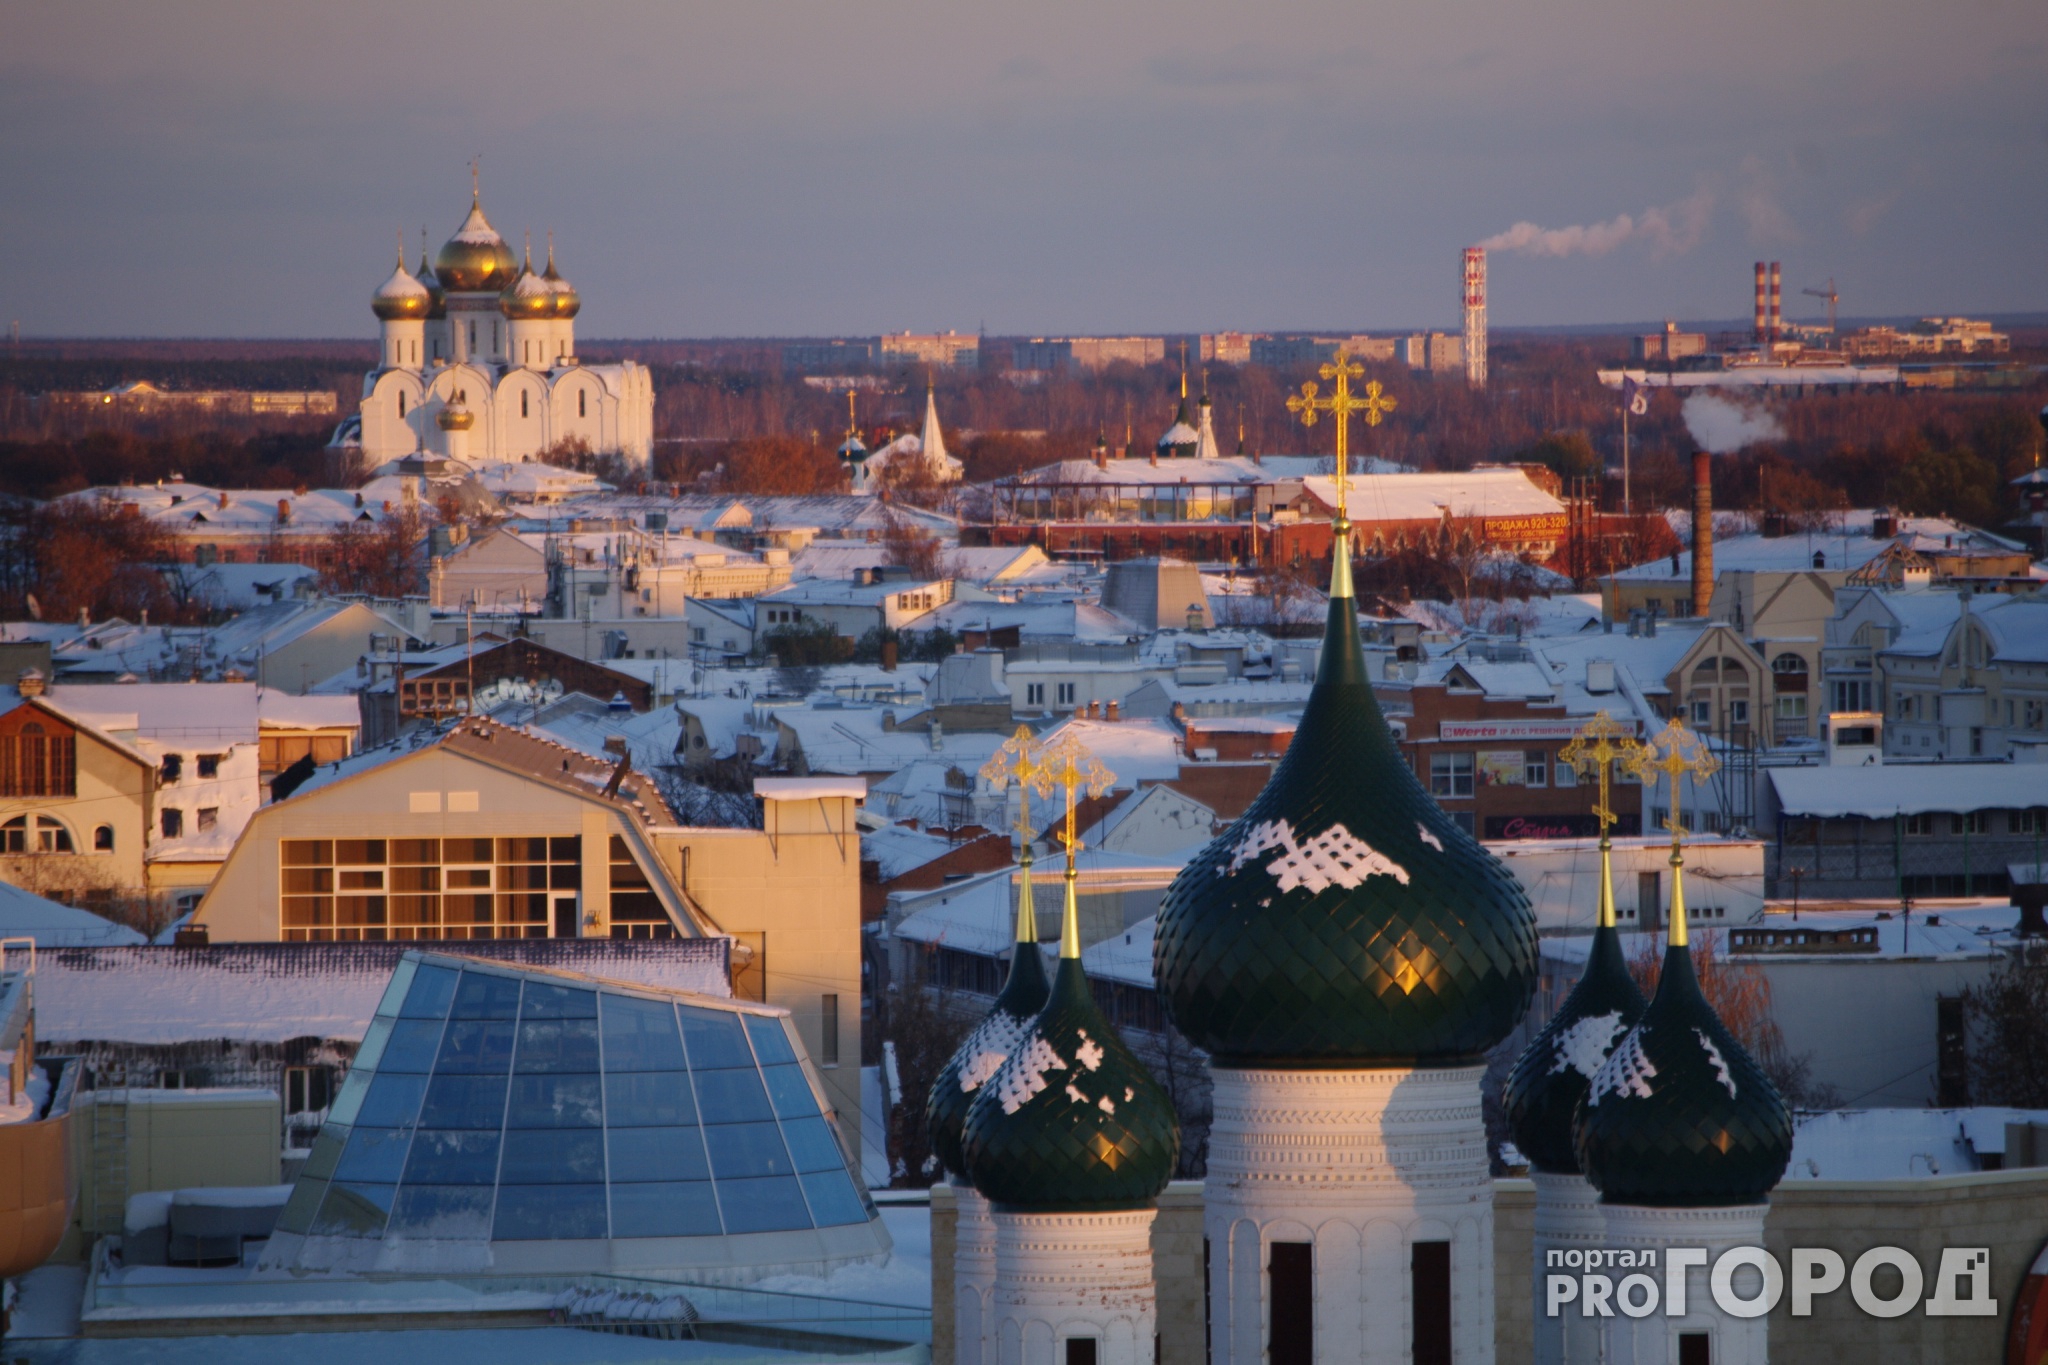 600 миллионов рублей: столица перечислила деньги на реконструкцию зоны ЮНЕСКО в Ярославле